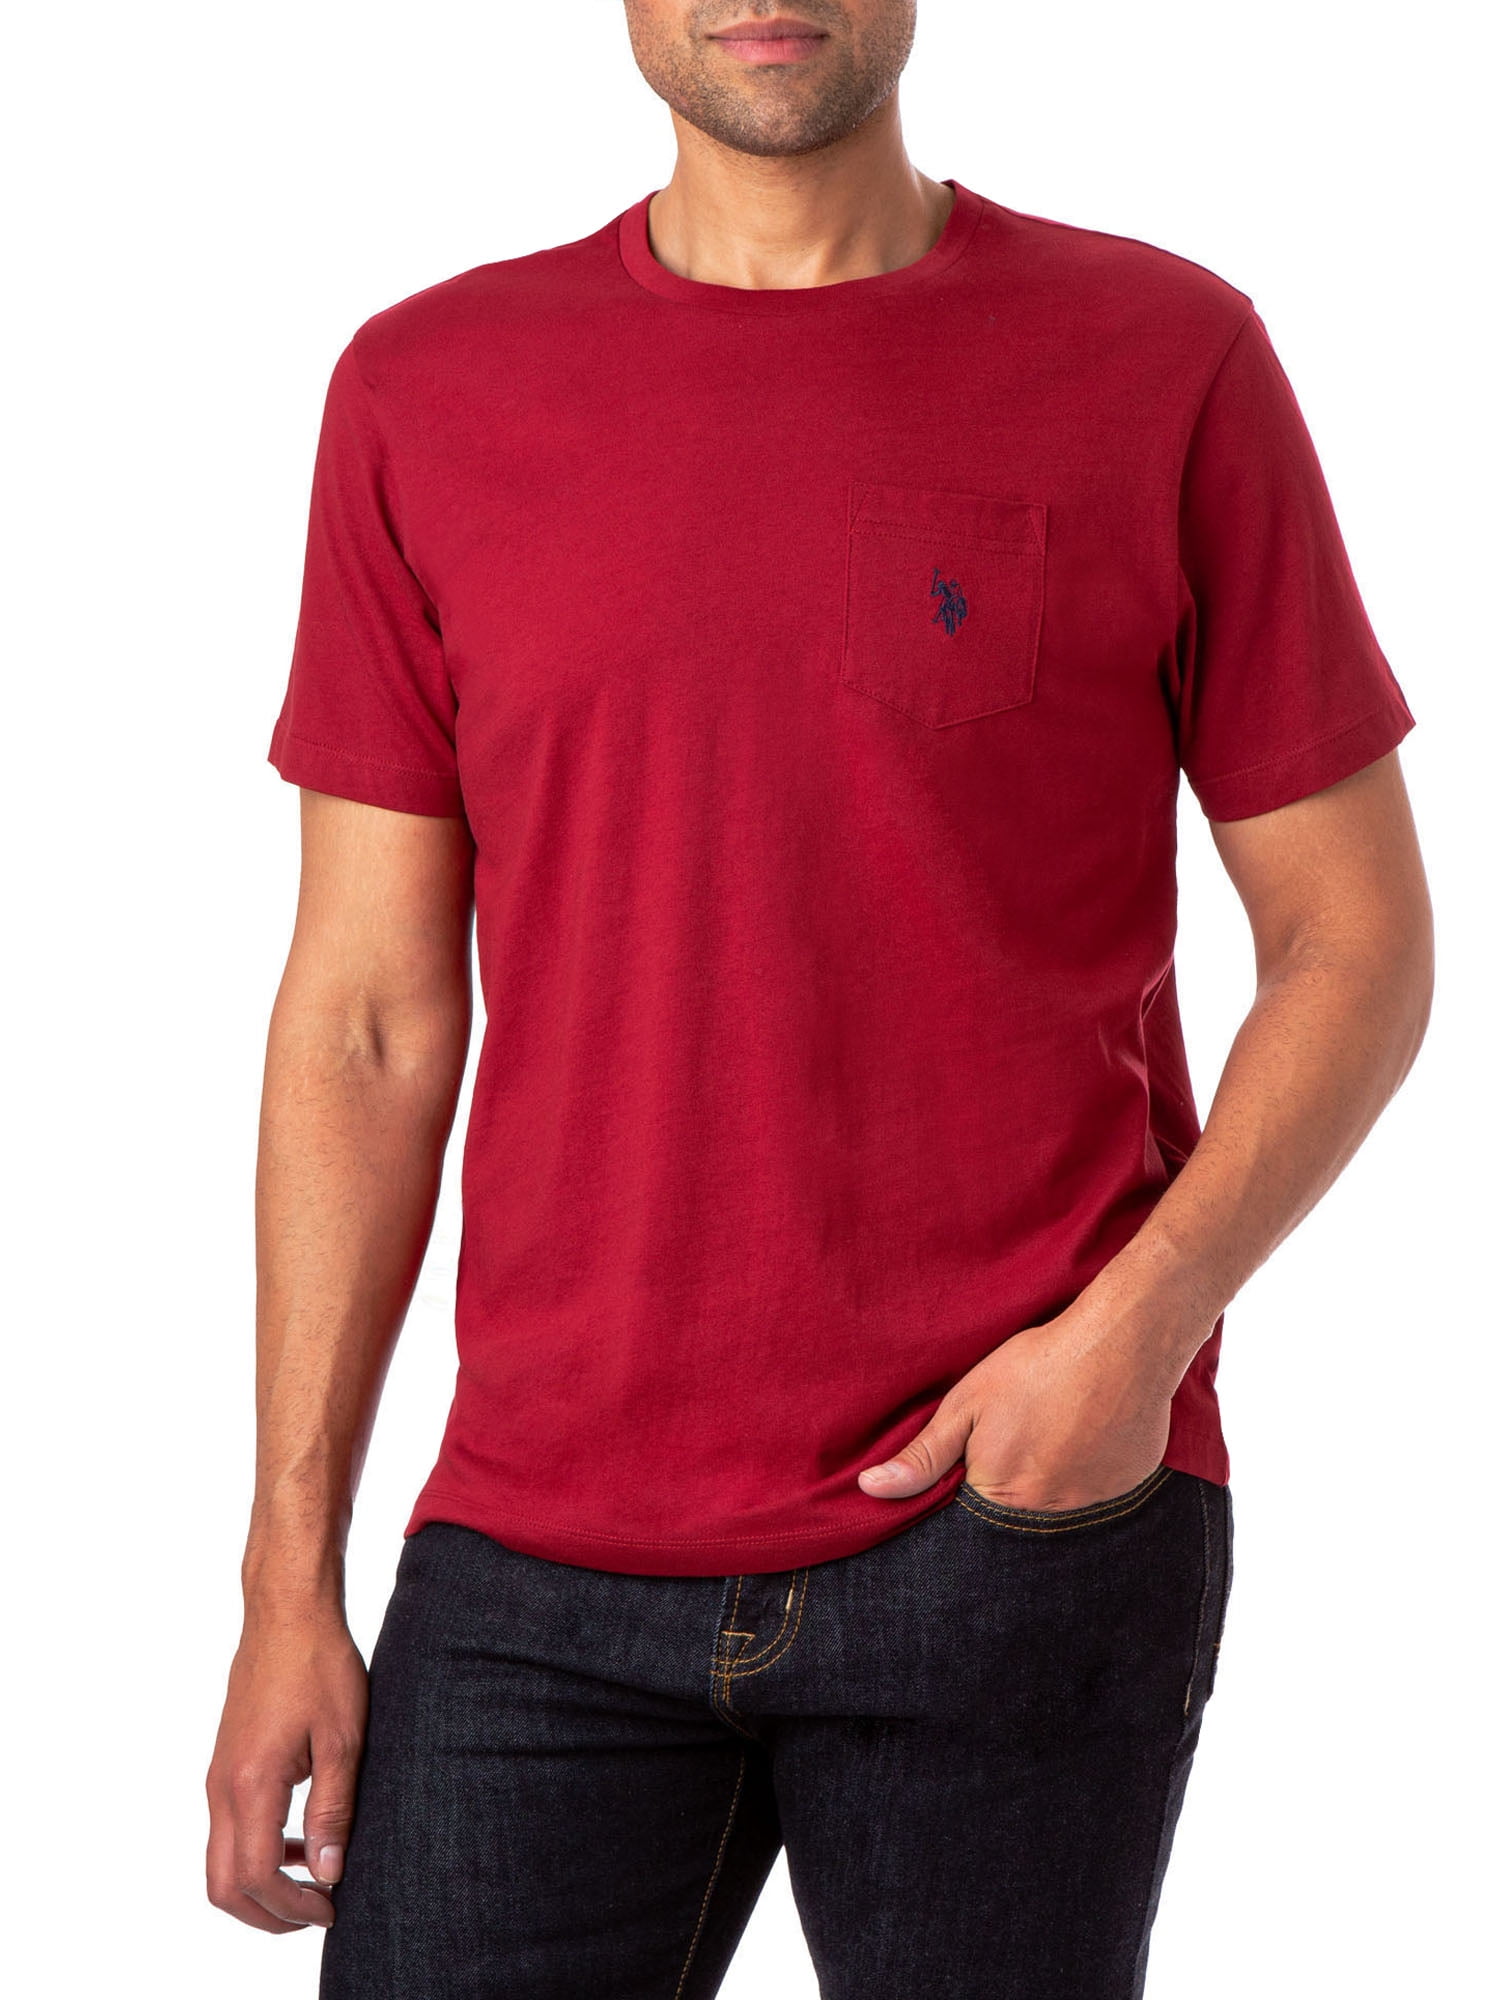 U.S. Polo Assn. Men's Pocket T-Shirt - Walmart.com